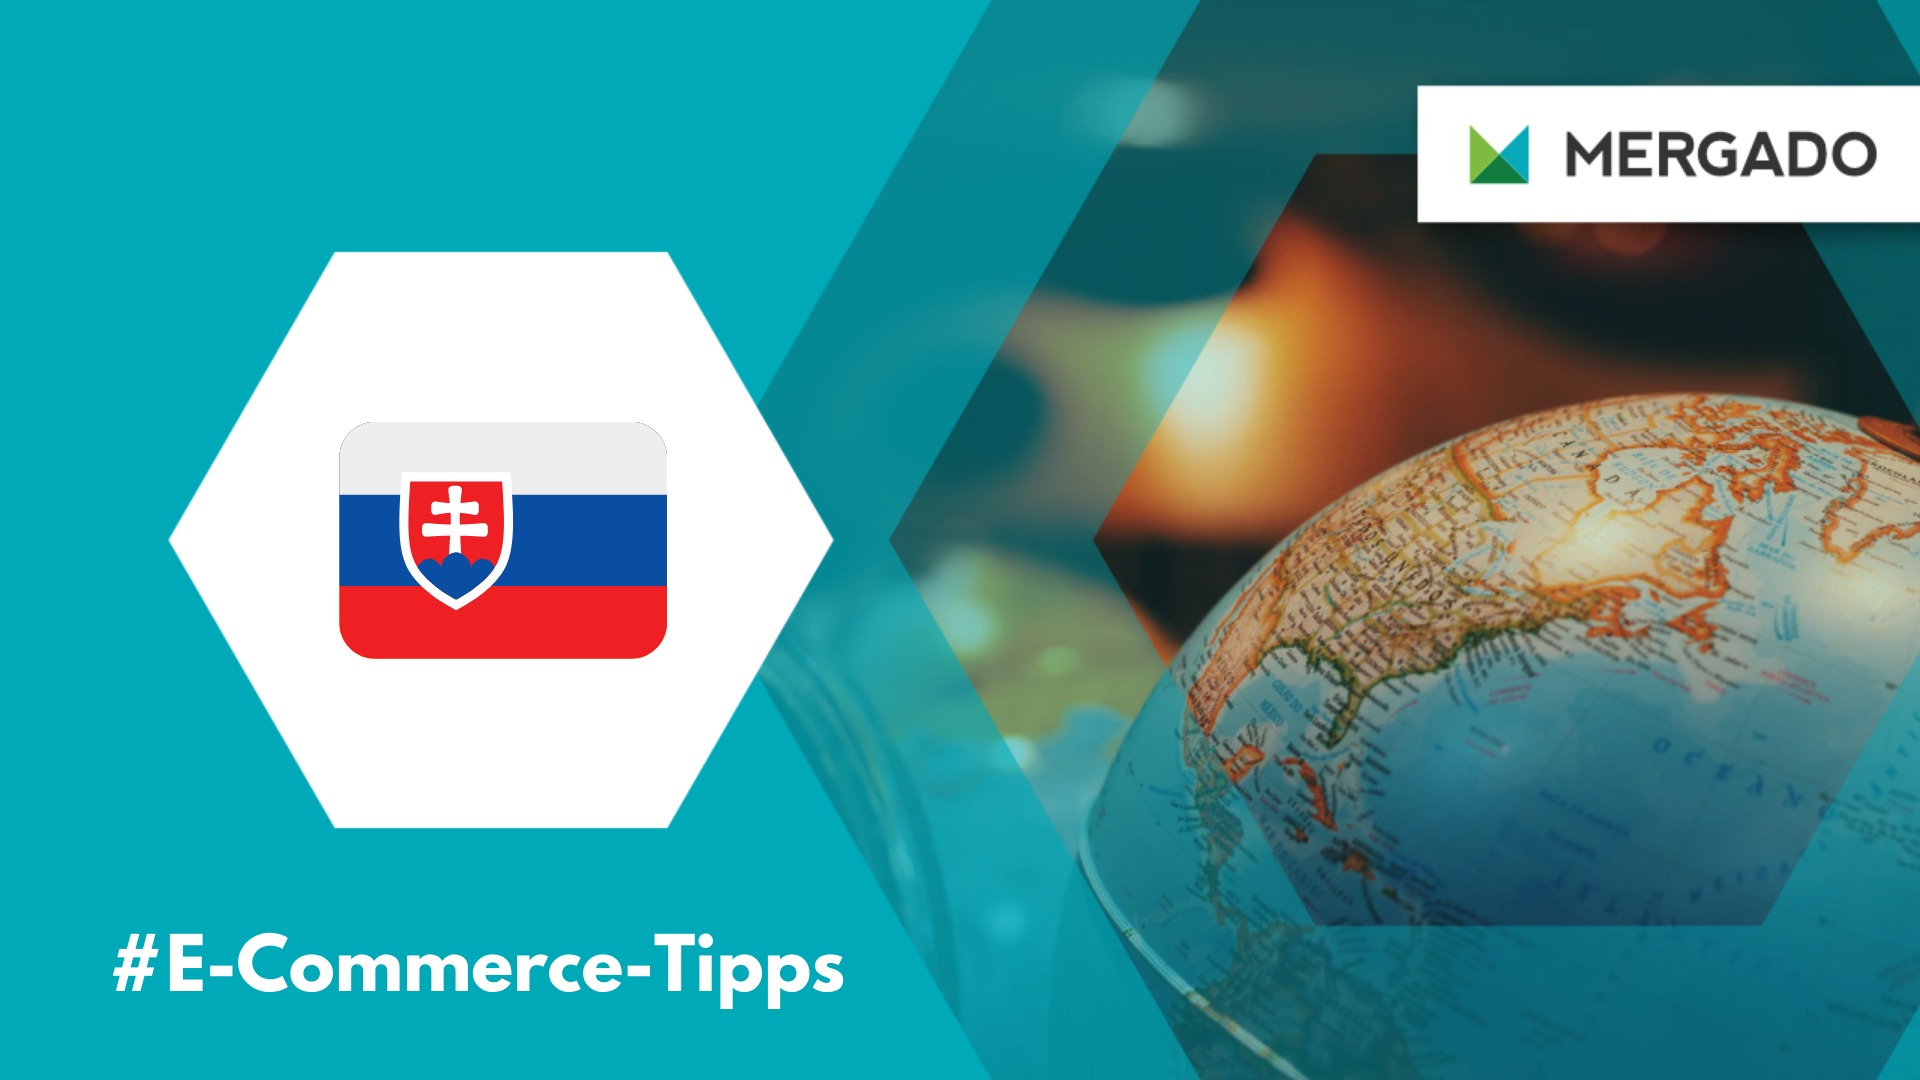 Ein guter Überblick über den slowakischen E-Commerce